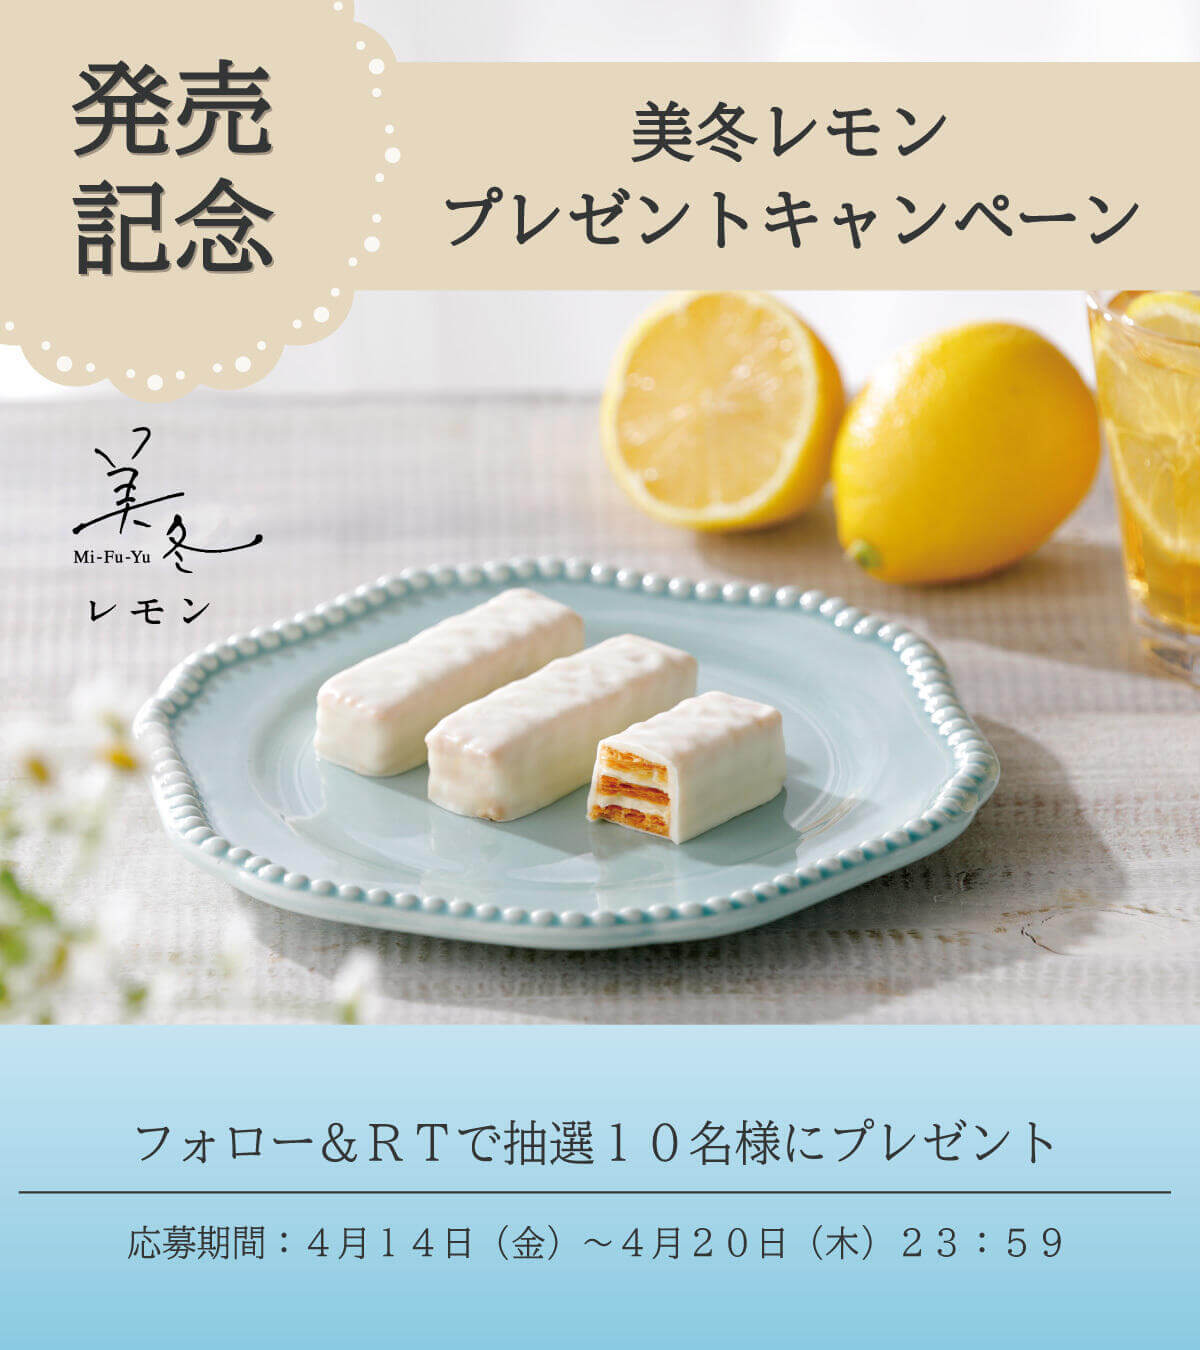 石屋製菓株式会社の『美冬(みふゆ) レモン 6個入』-Twitterキャンペーン